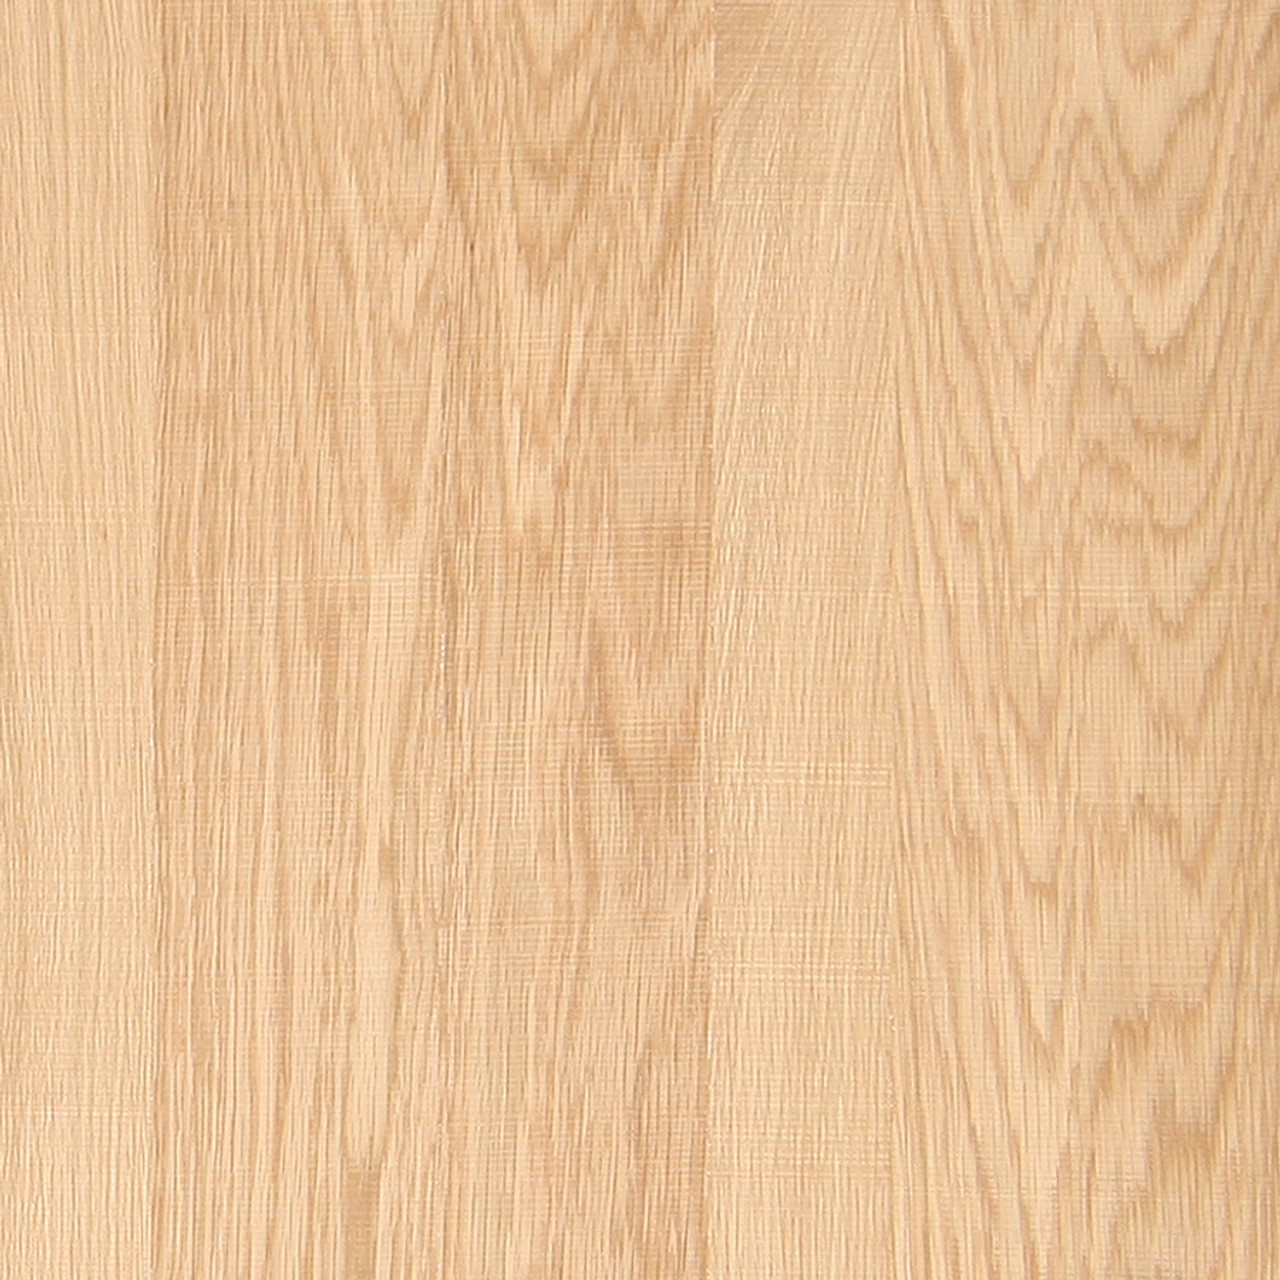 Retningslinier Kollisionskursus blur Oak Veneer - White Rough Sawn Random Plank Panels - Oakwood Veneer